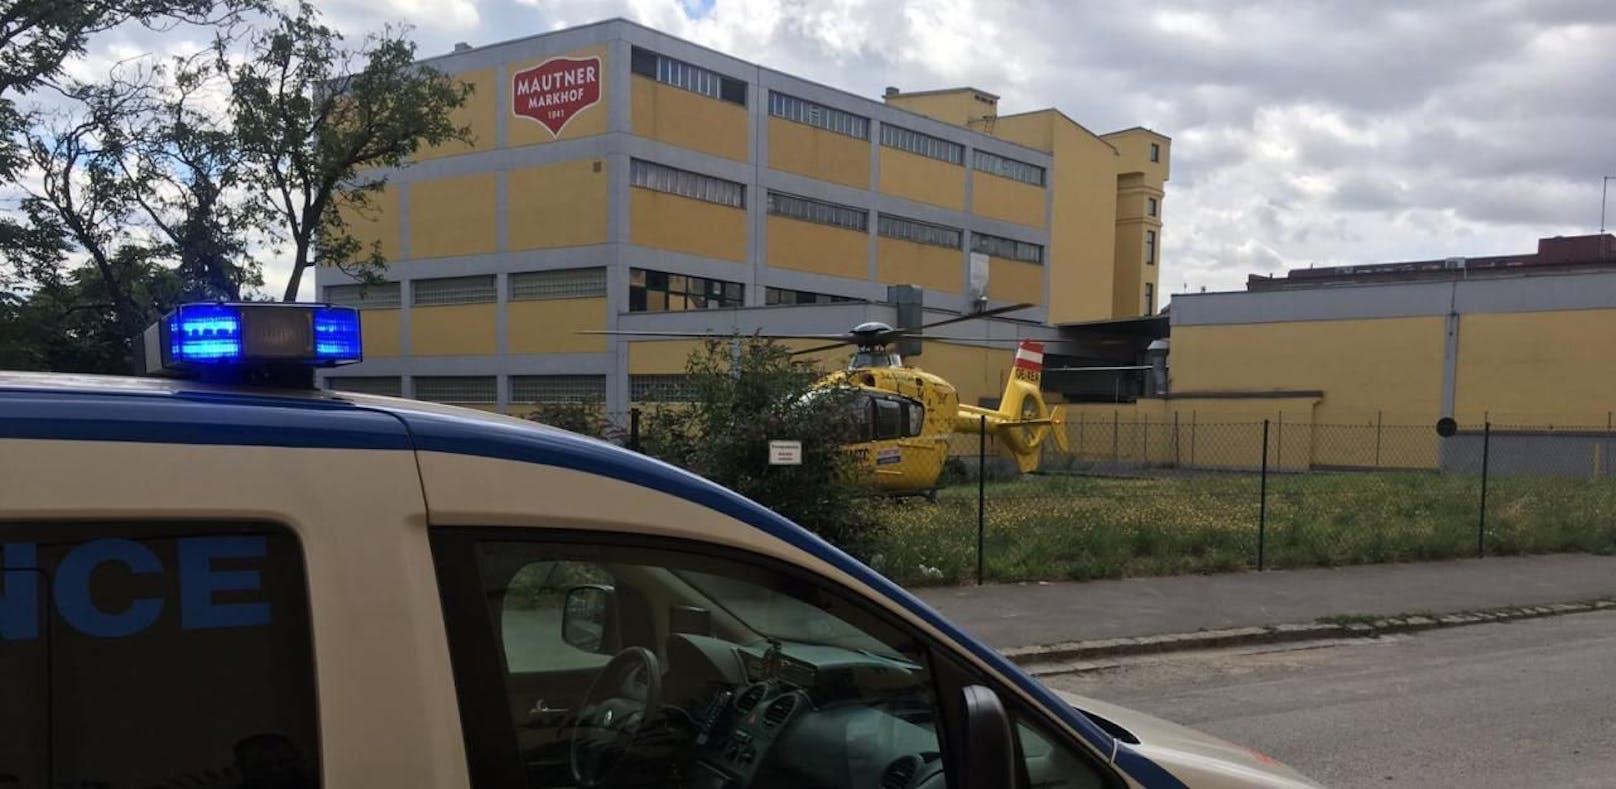 Der Patient musste mit dem Rettungshubschrauber ins Spital geflogen werden.